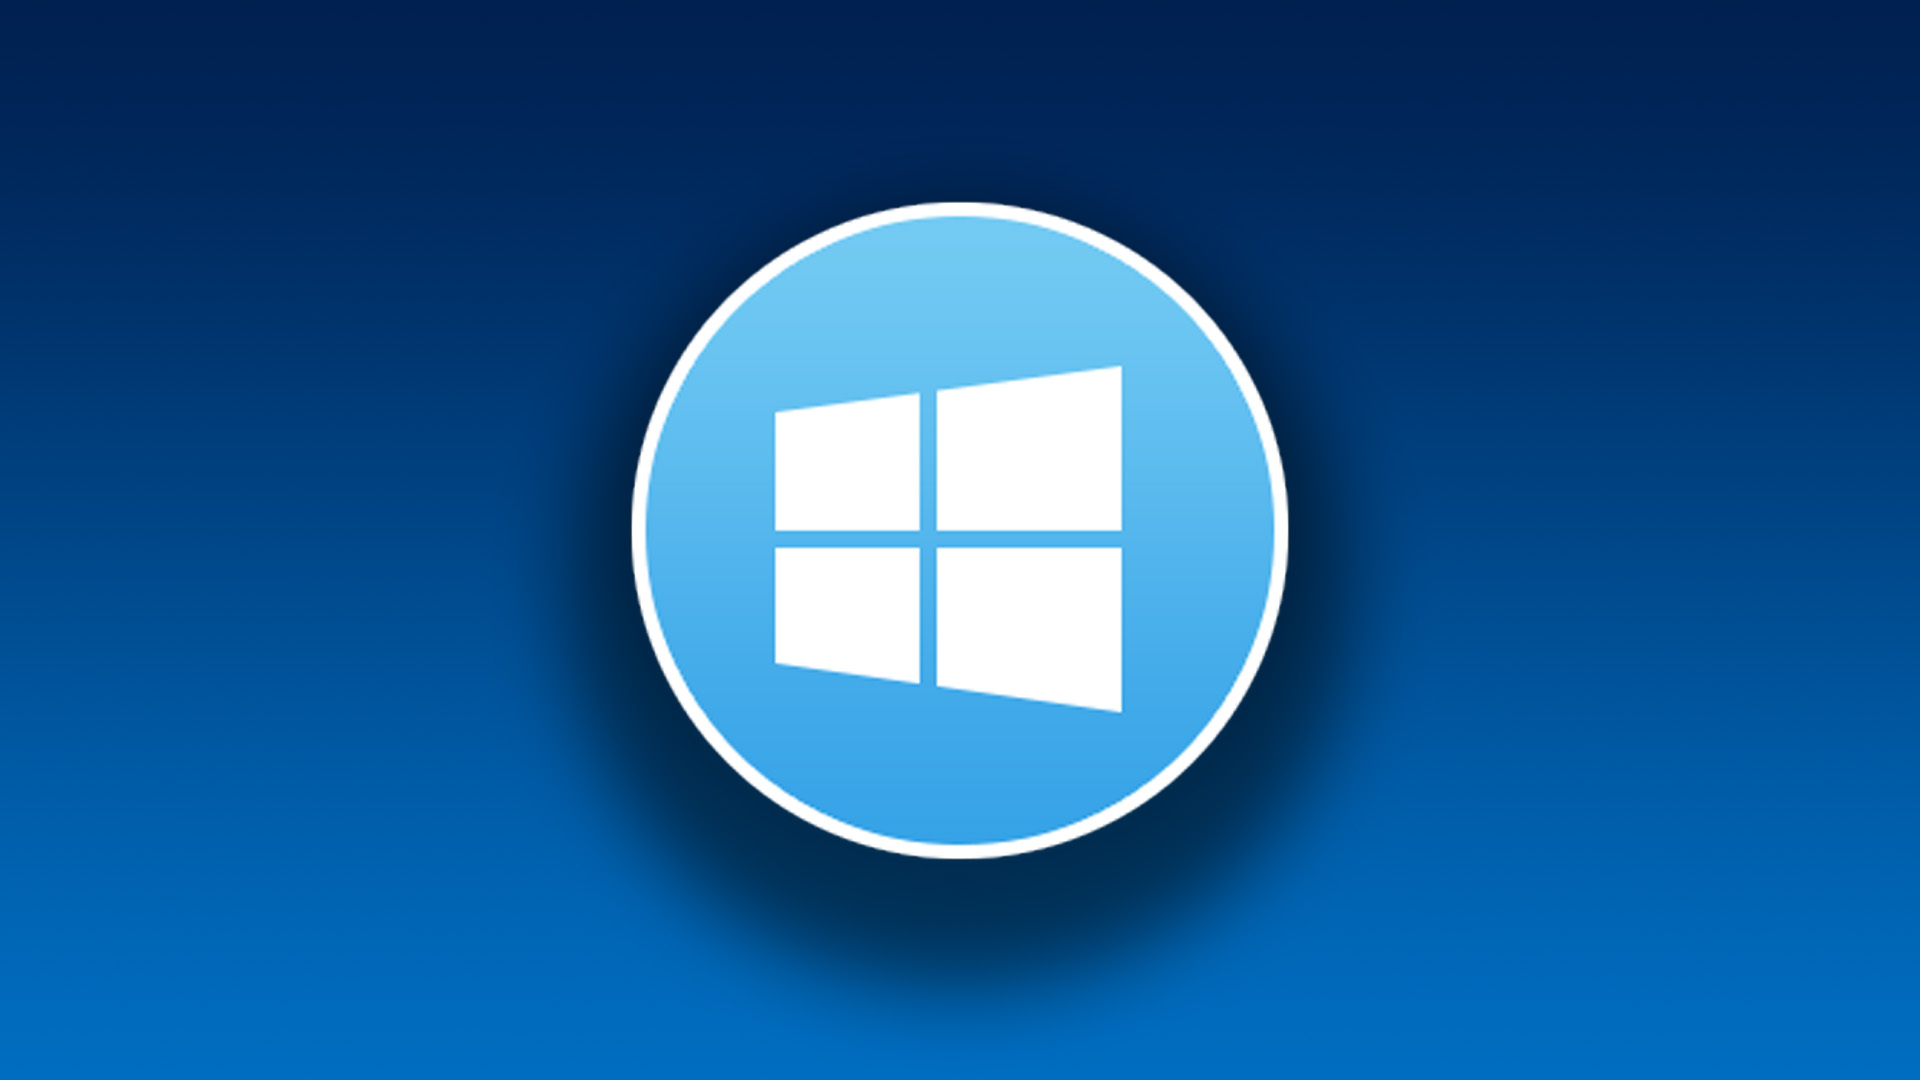 Windows 10 Mikrofon Sorunu Çözümü